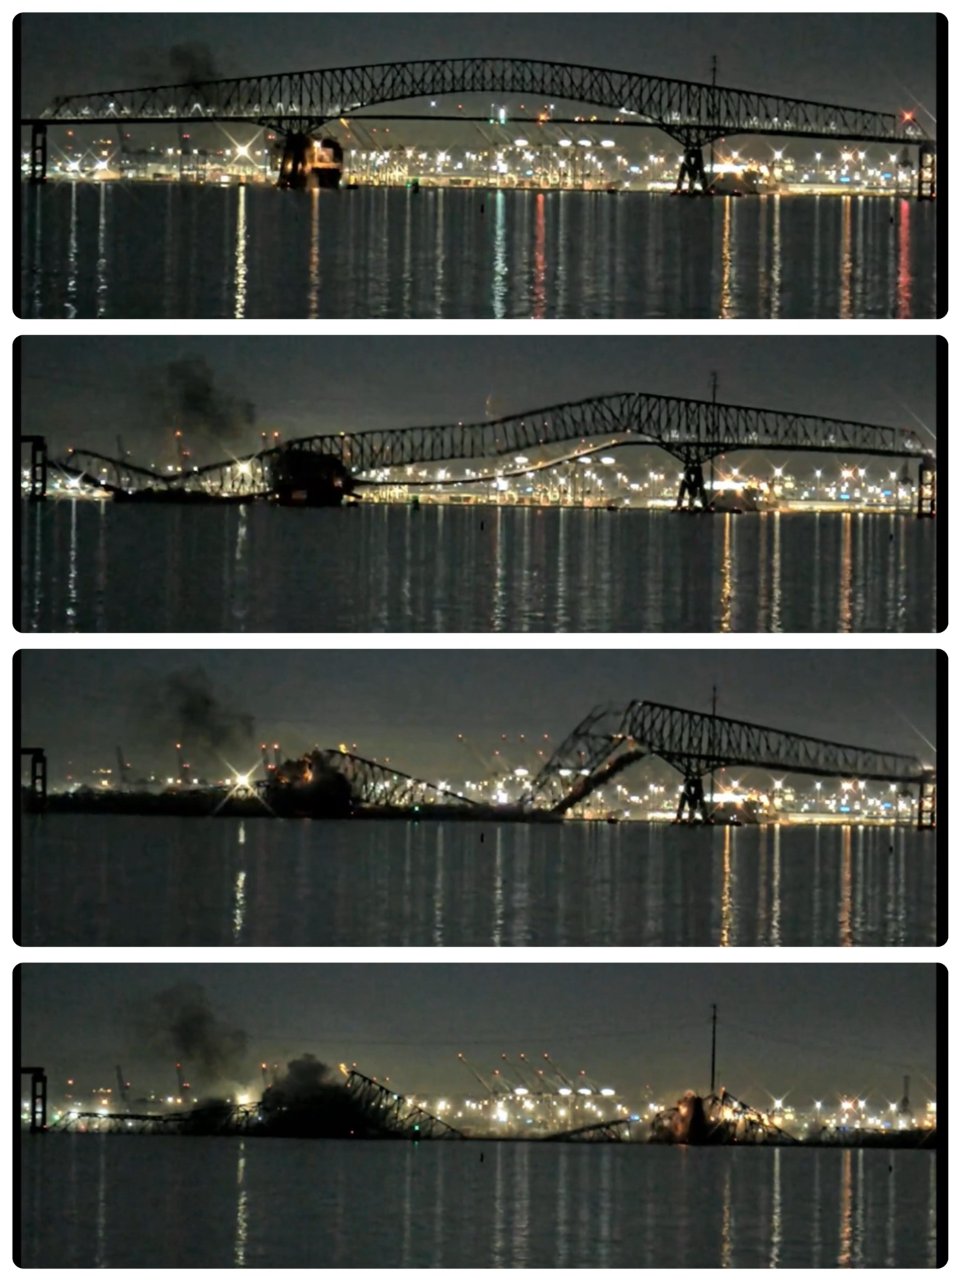 惊！马里兰大桥坍塌！...